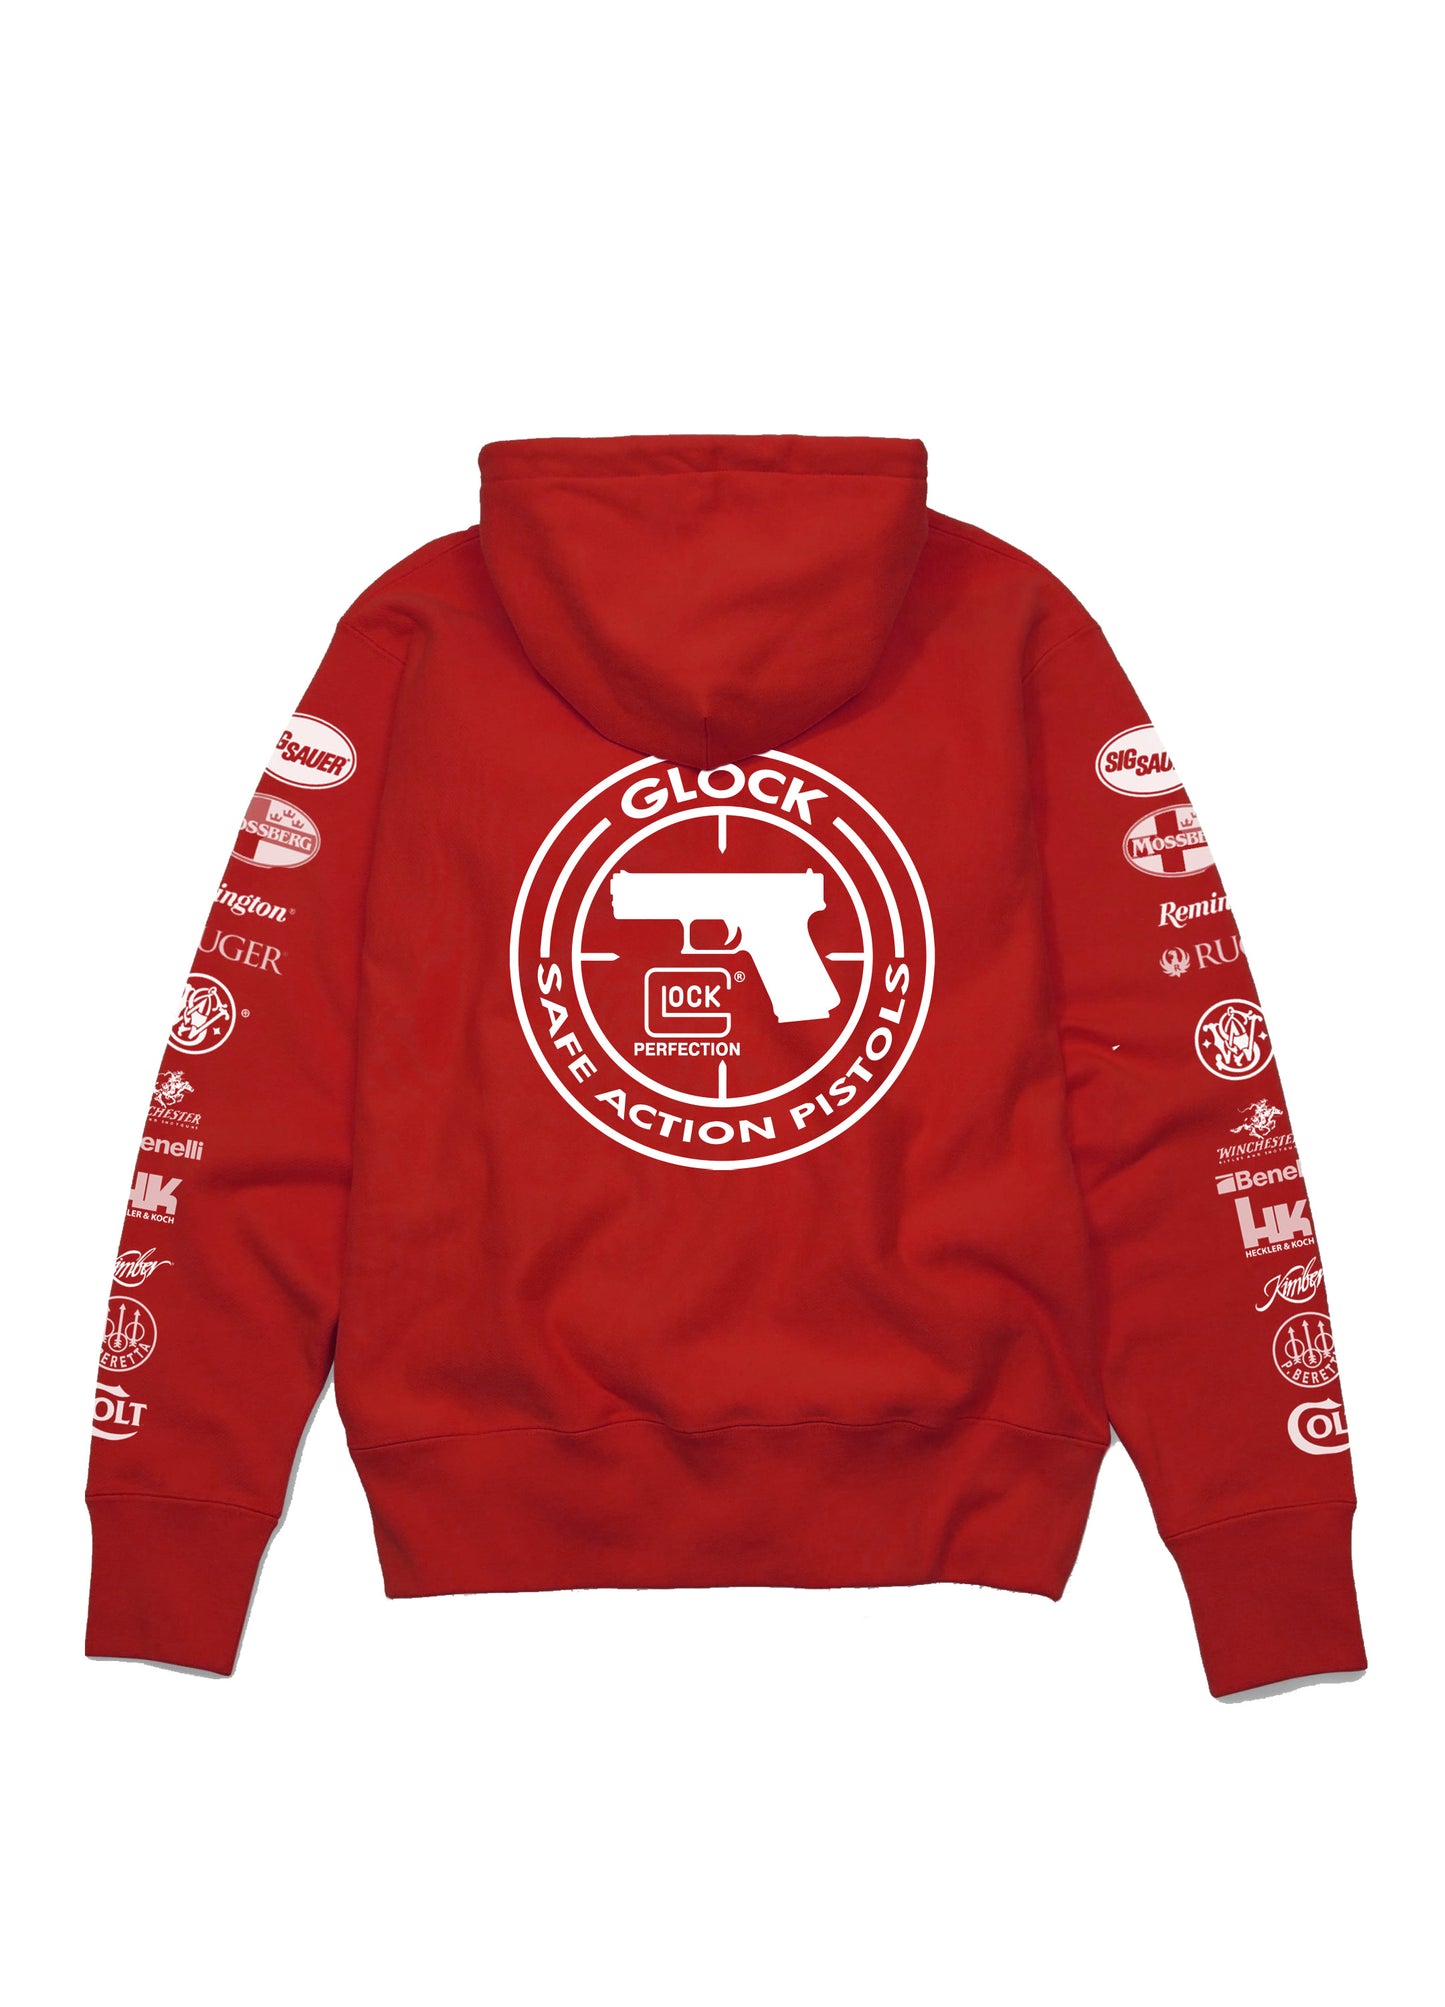 Gun Shop Sleeved Logos Hoodie Red